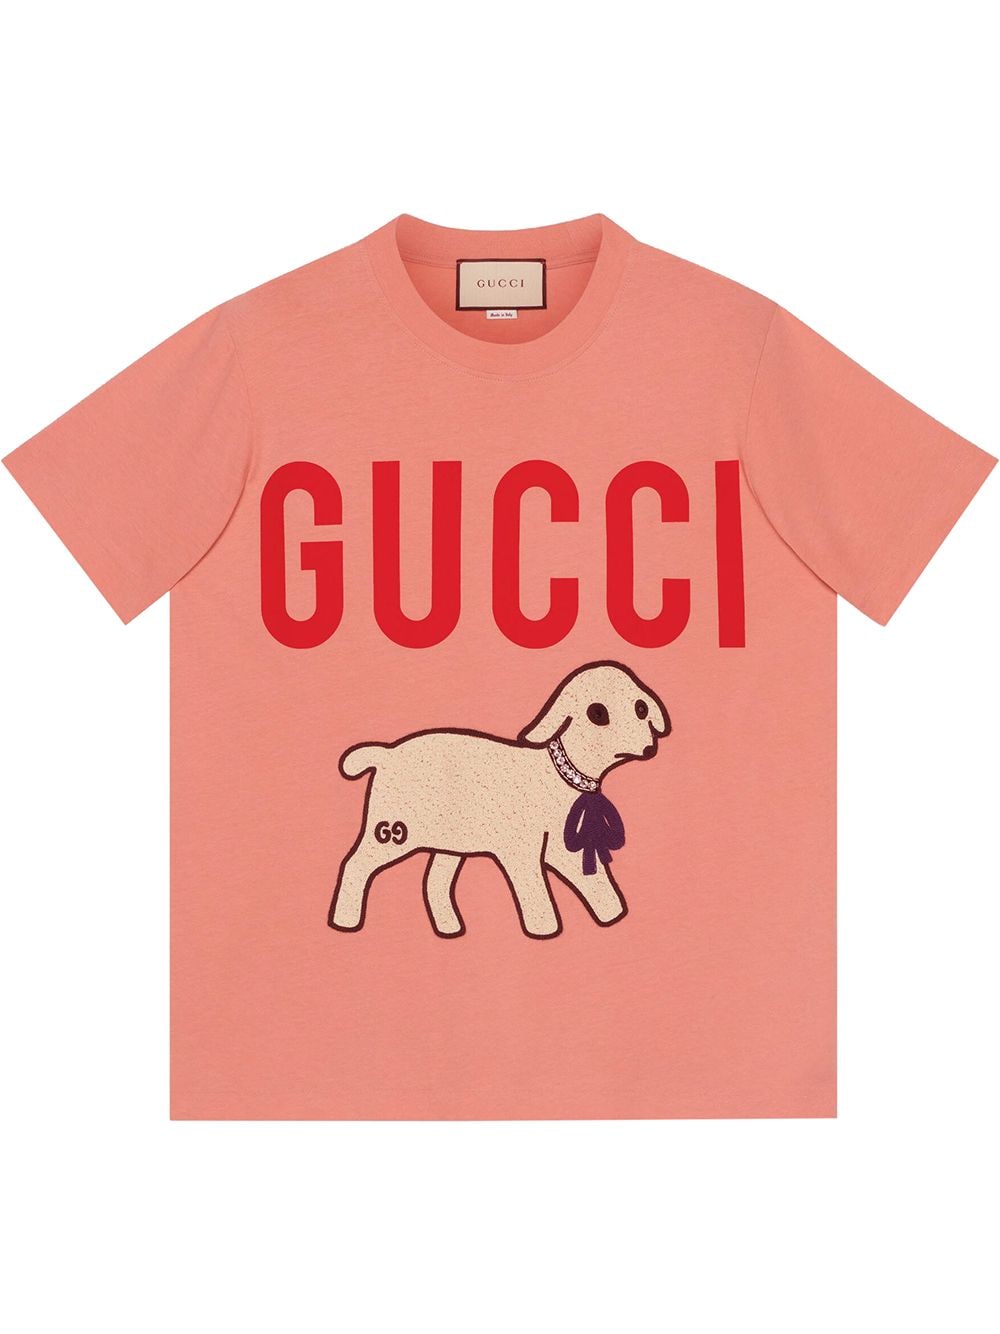 фото Gucci футболка с принтом Gucci